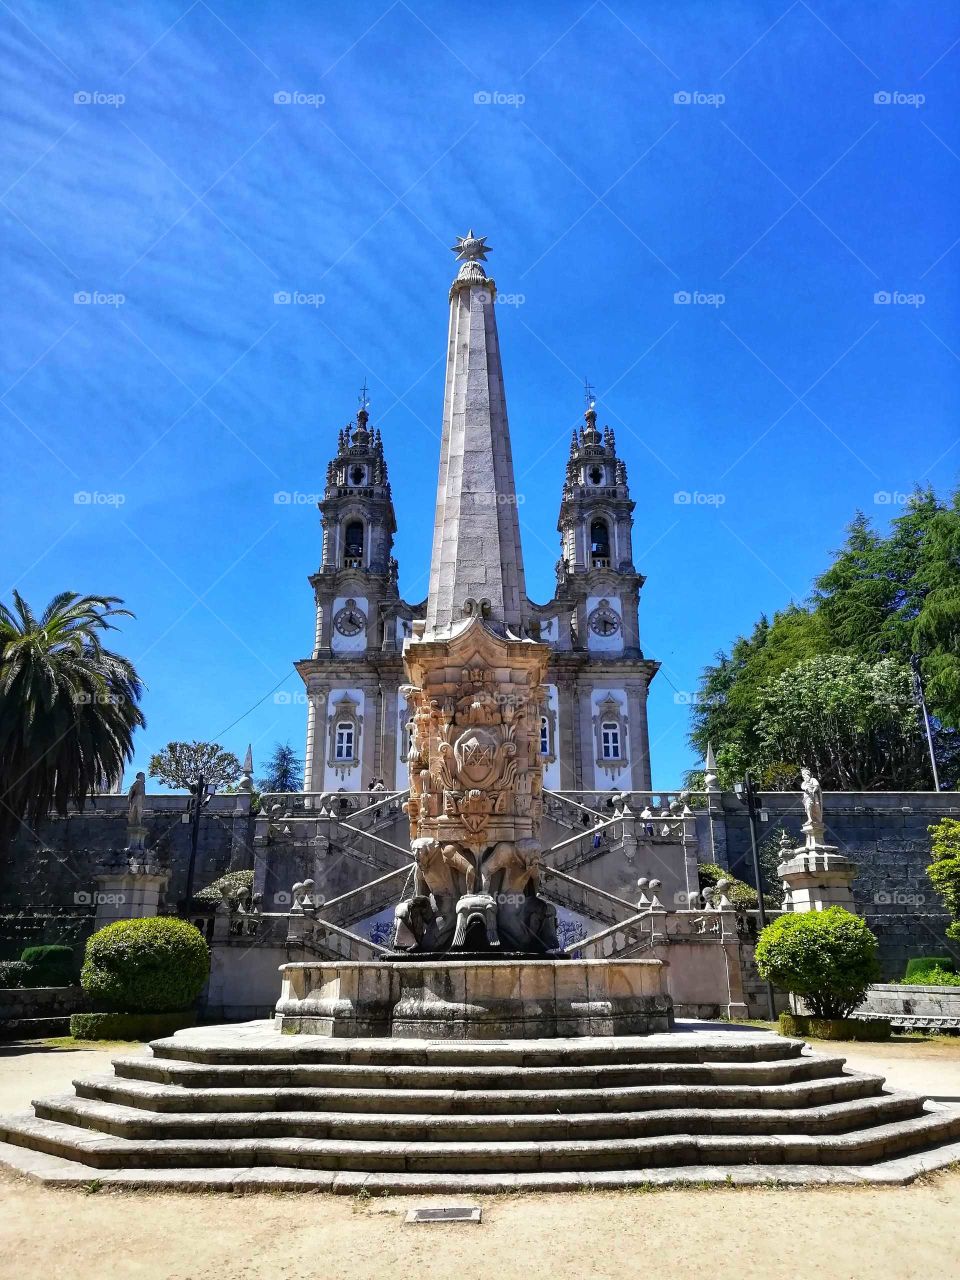 Santuário de Nossa Senhora dos Remédios in Lamego, Portugal